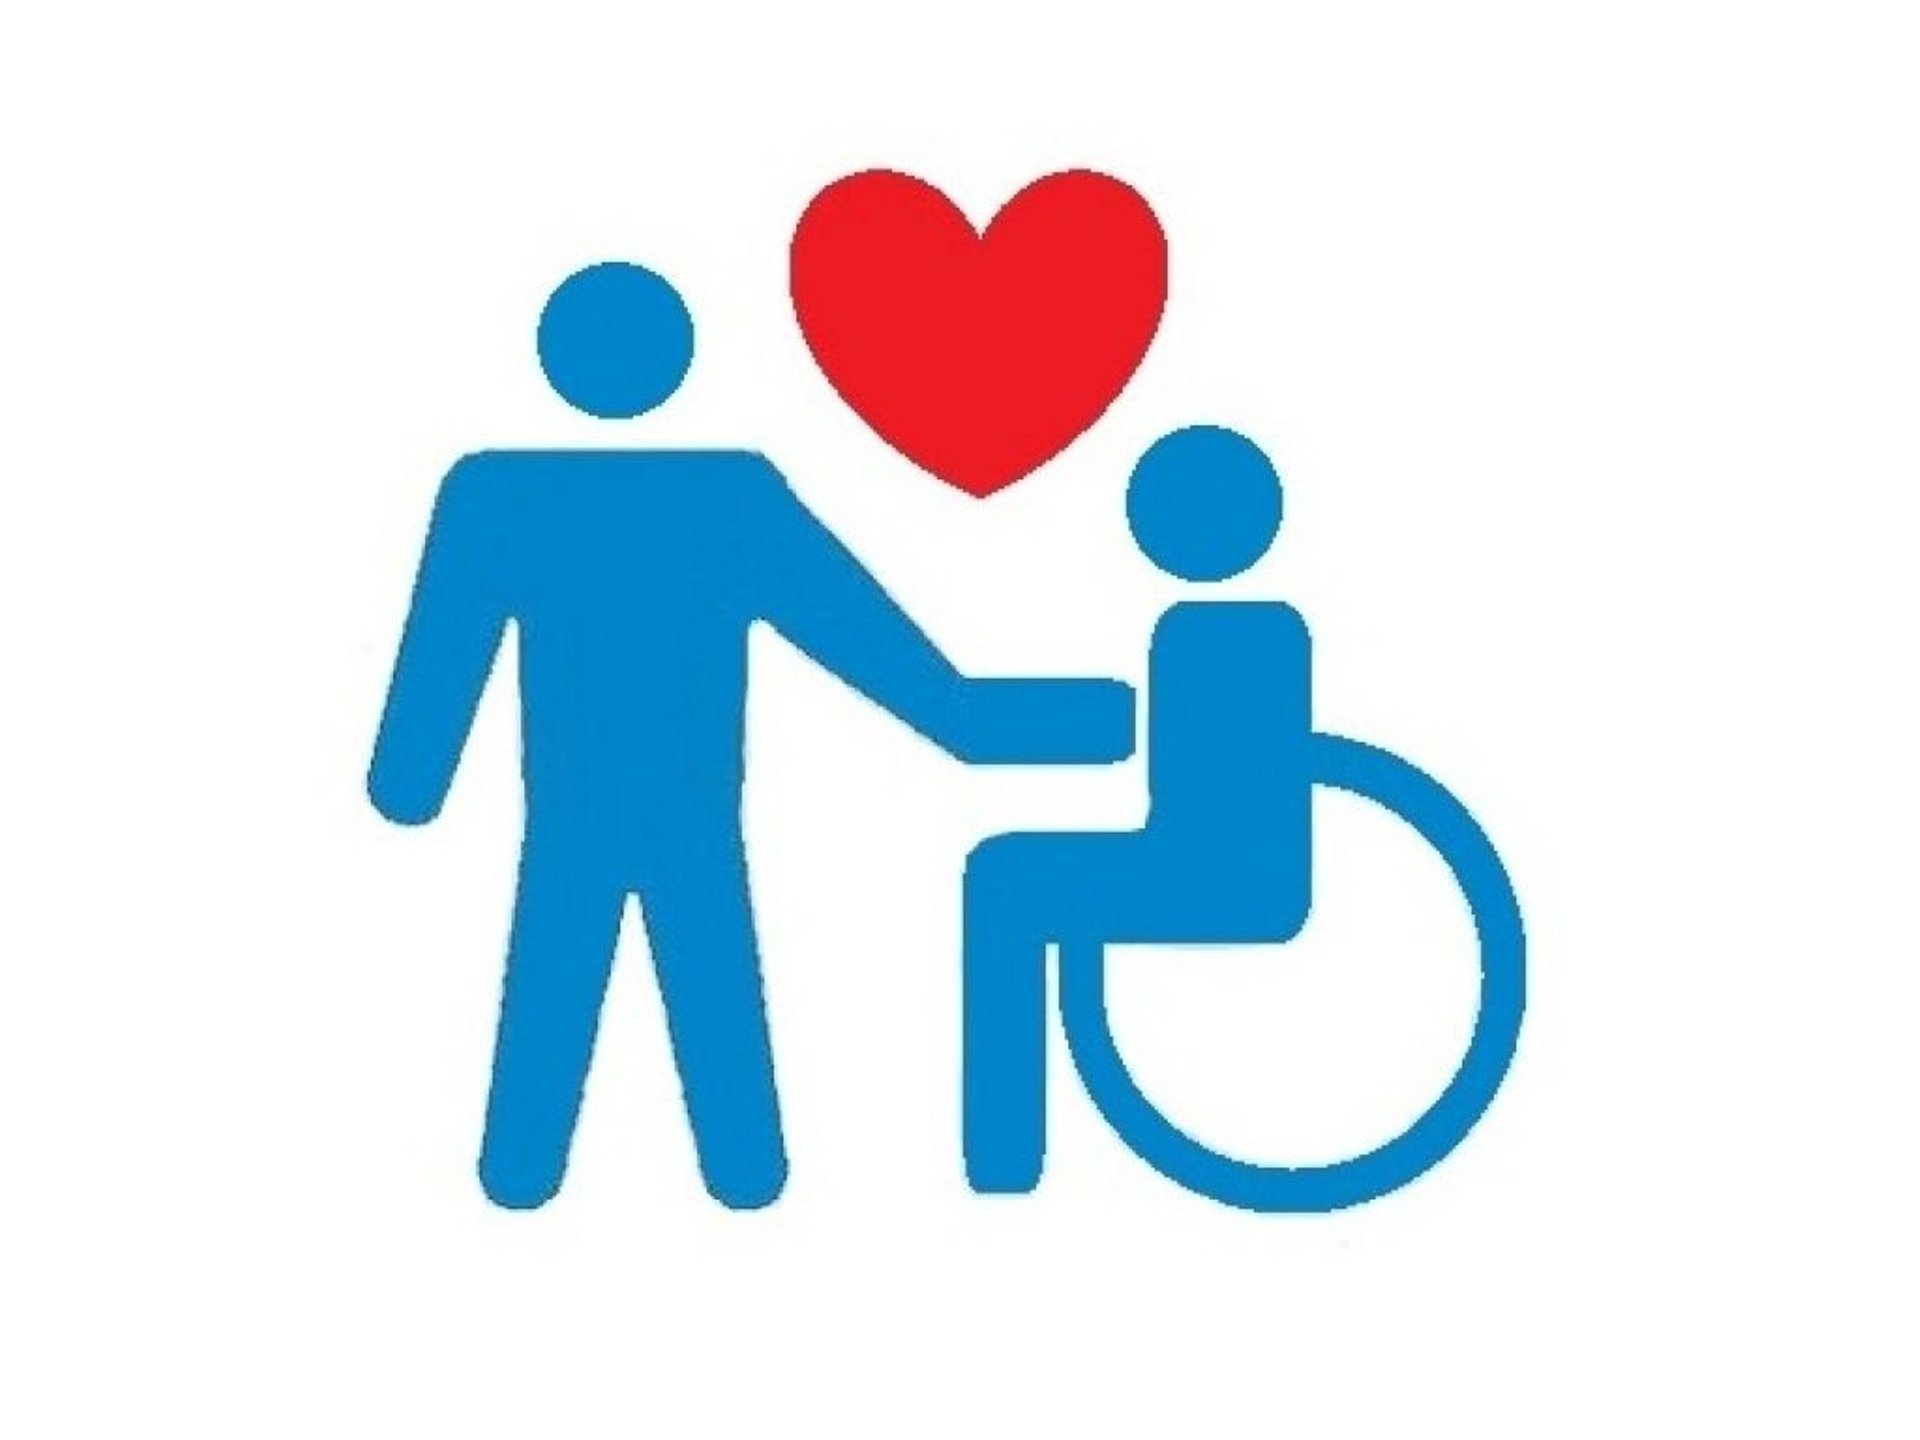 Инвалидность помогу. Дети с ограниченными возможностями здоровья. Плакат ко Дню инвалидов. Рисунок ко Дню инвалидов. День инвалидов.